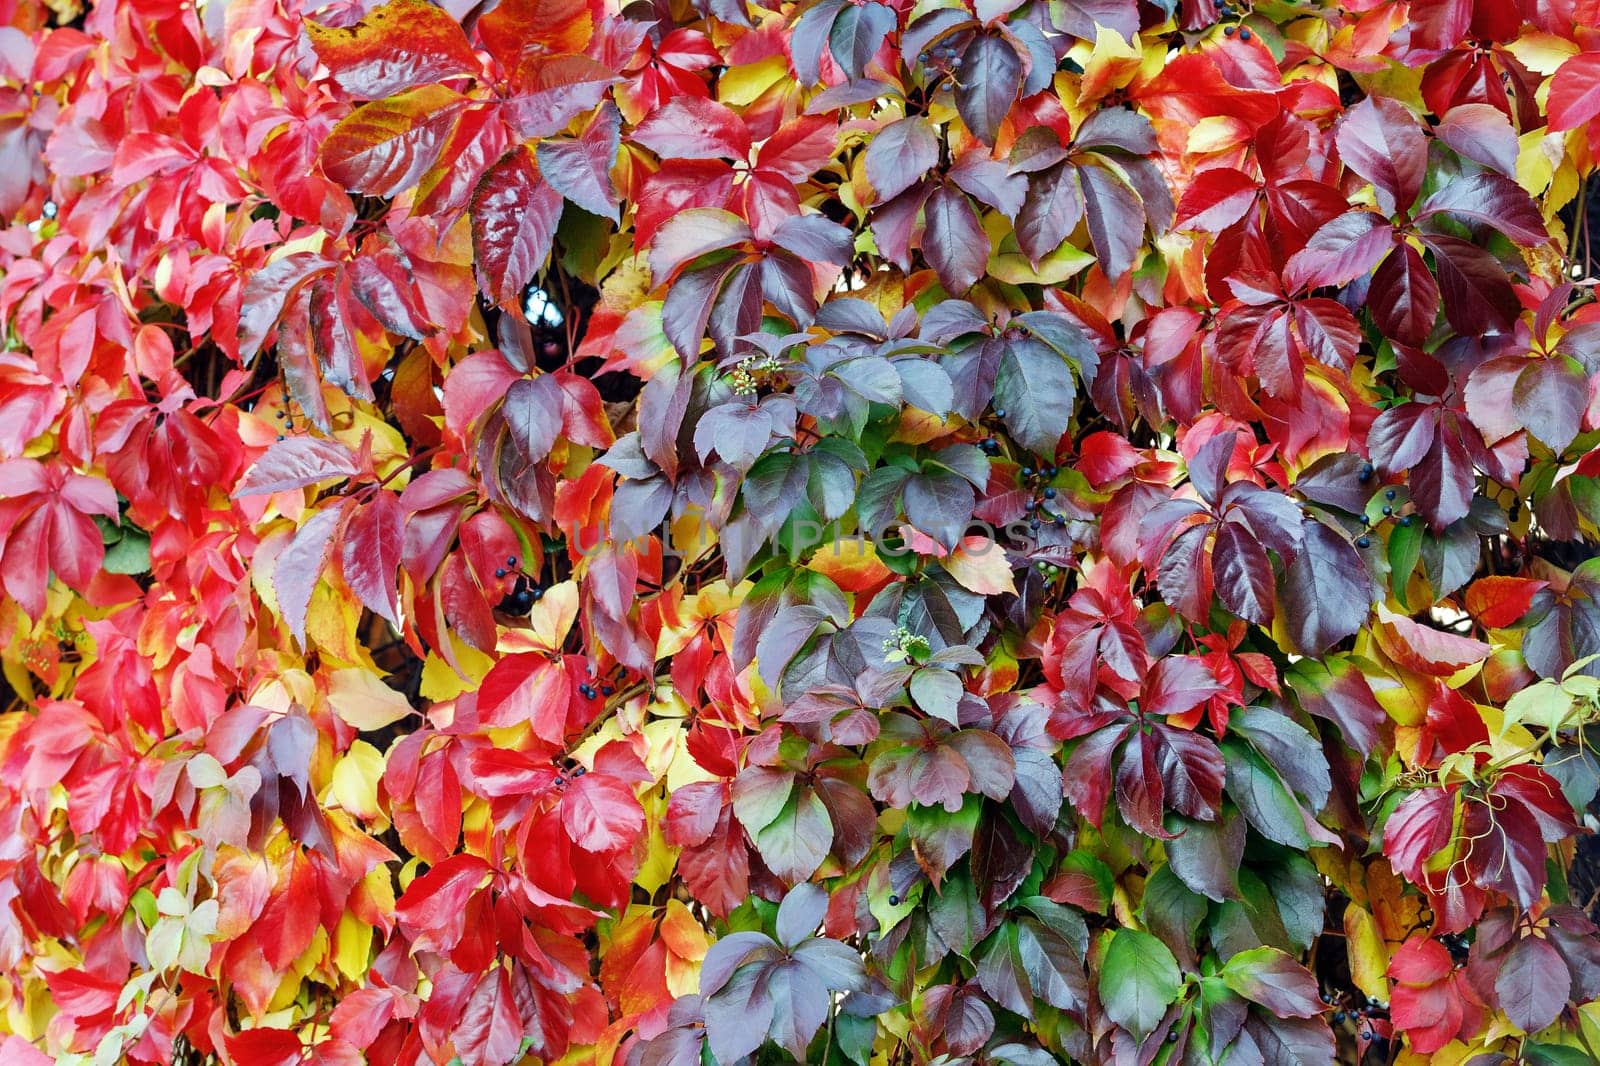 Parthenocissus quinquefolia grape vine autumnal colorful foliage covering.a garden wall. by Lincikas